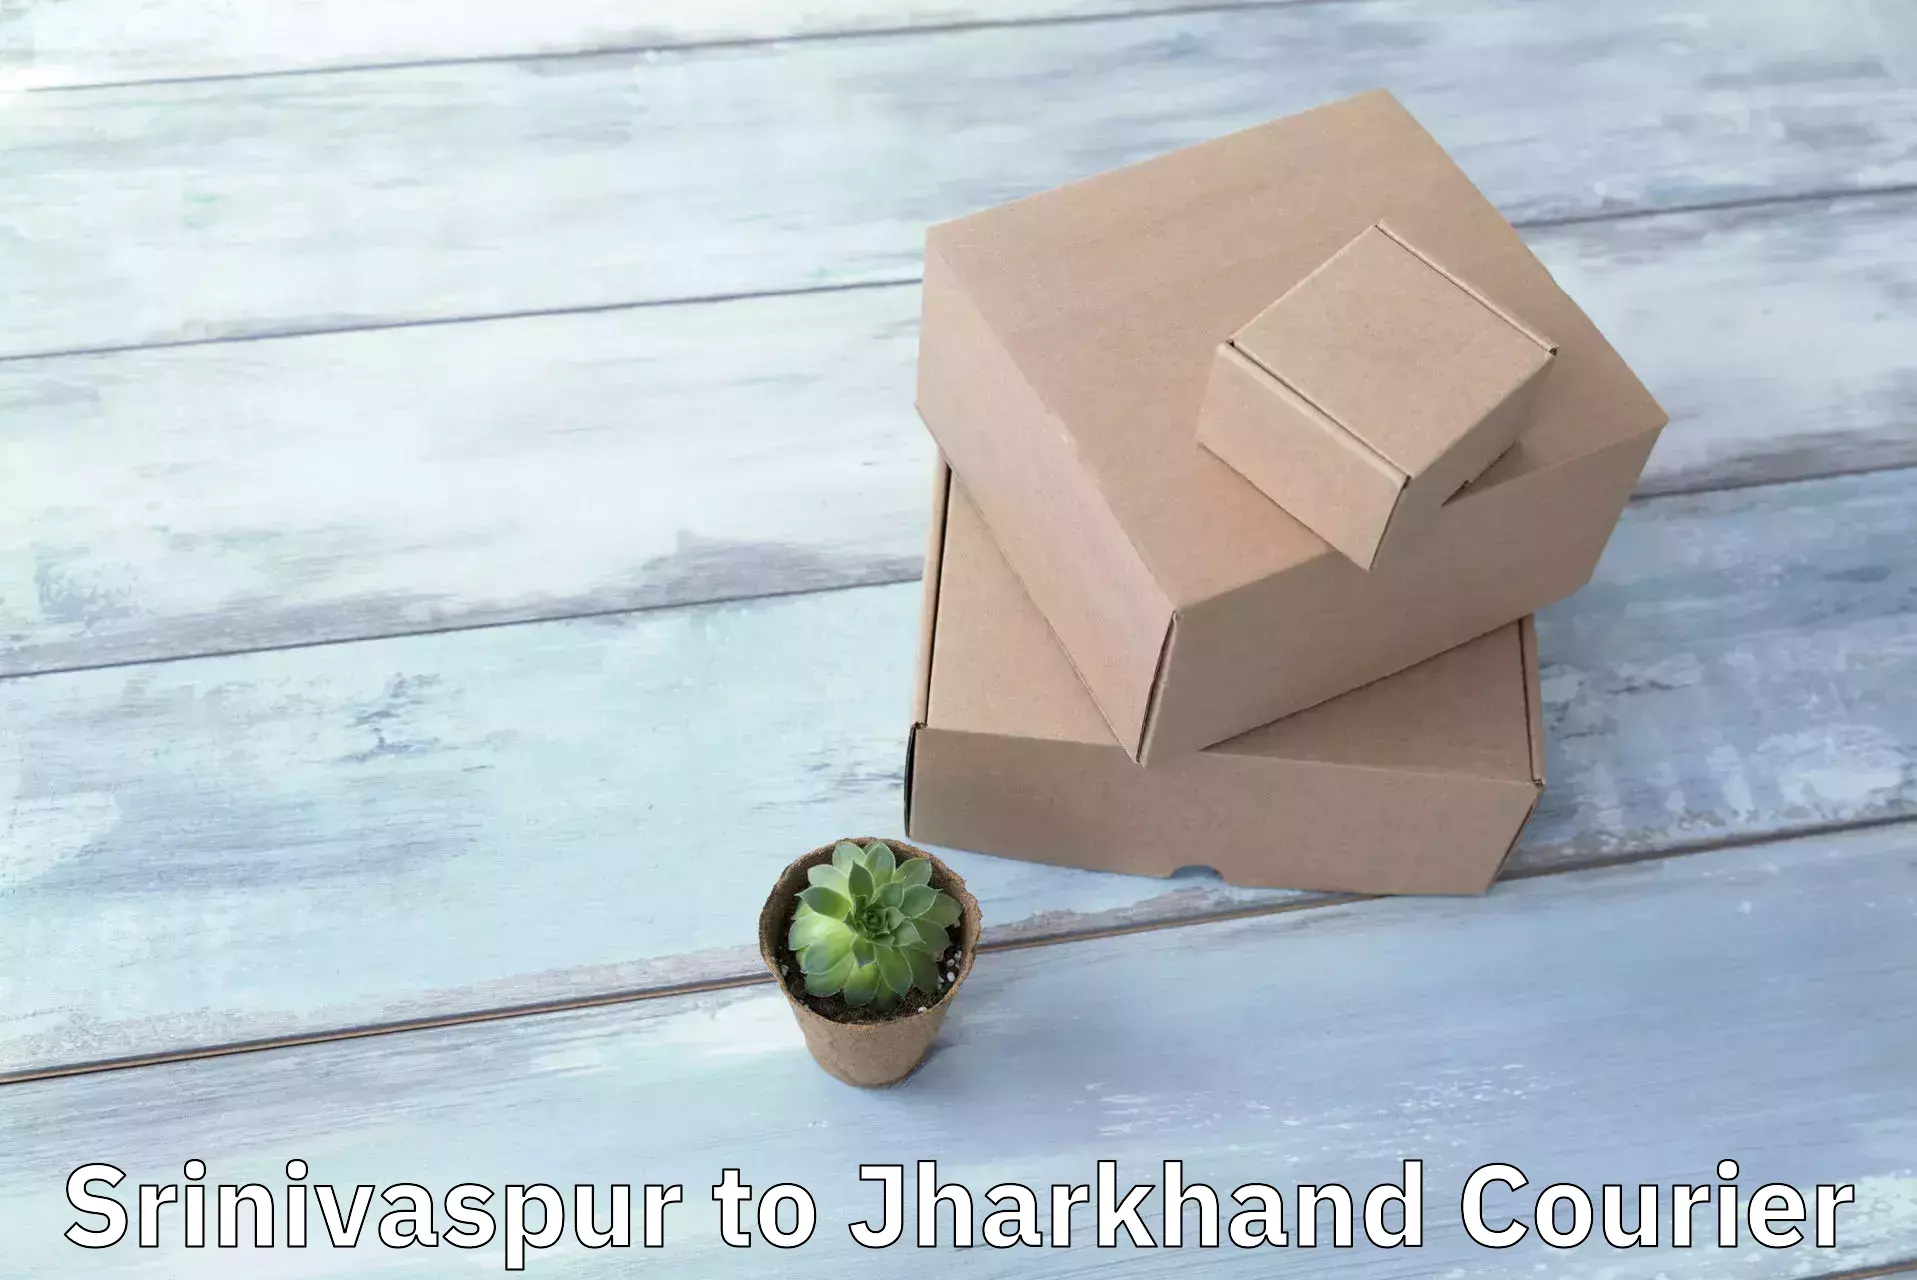 Innovative courier solutions Srinivaspur to Medininagar